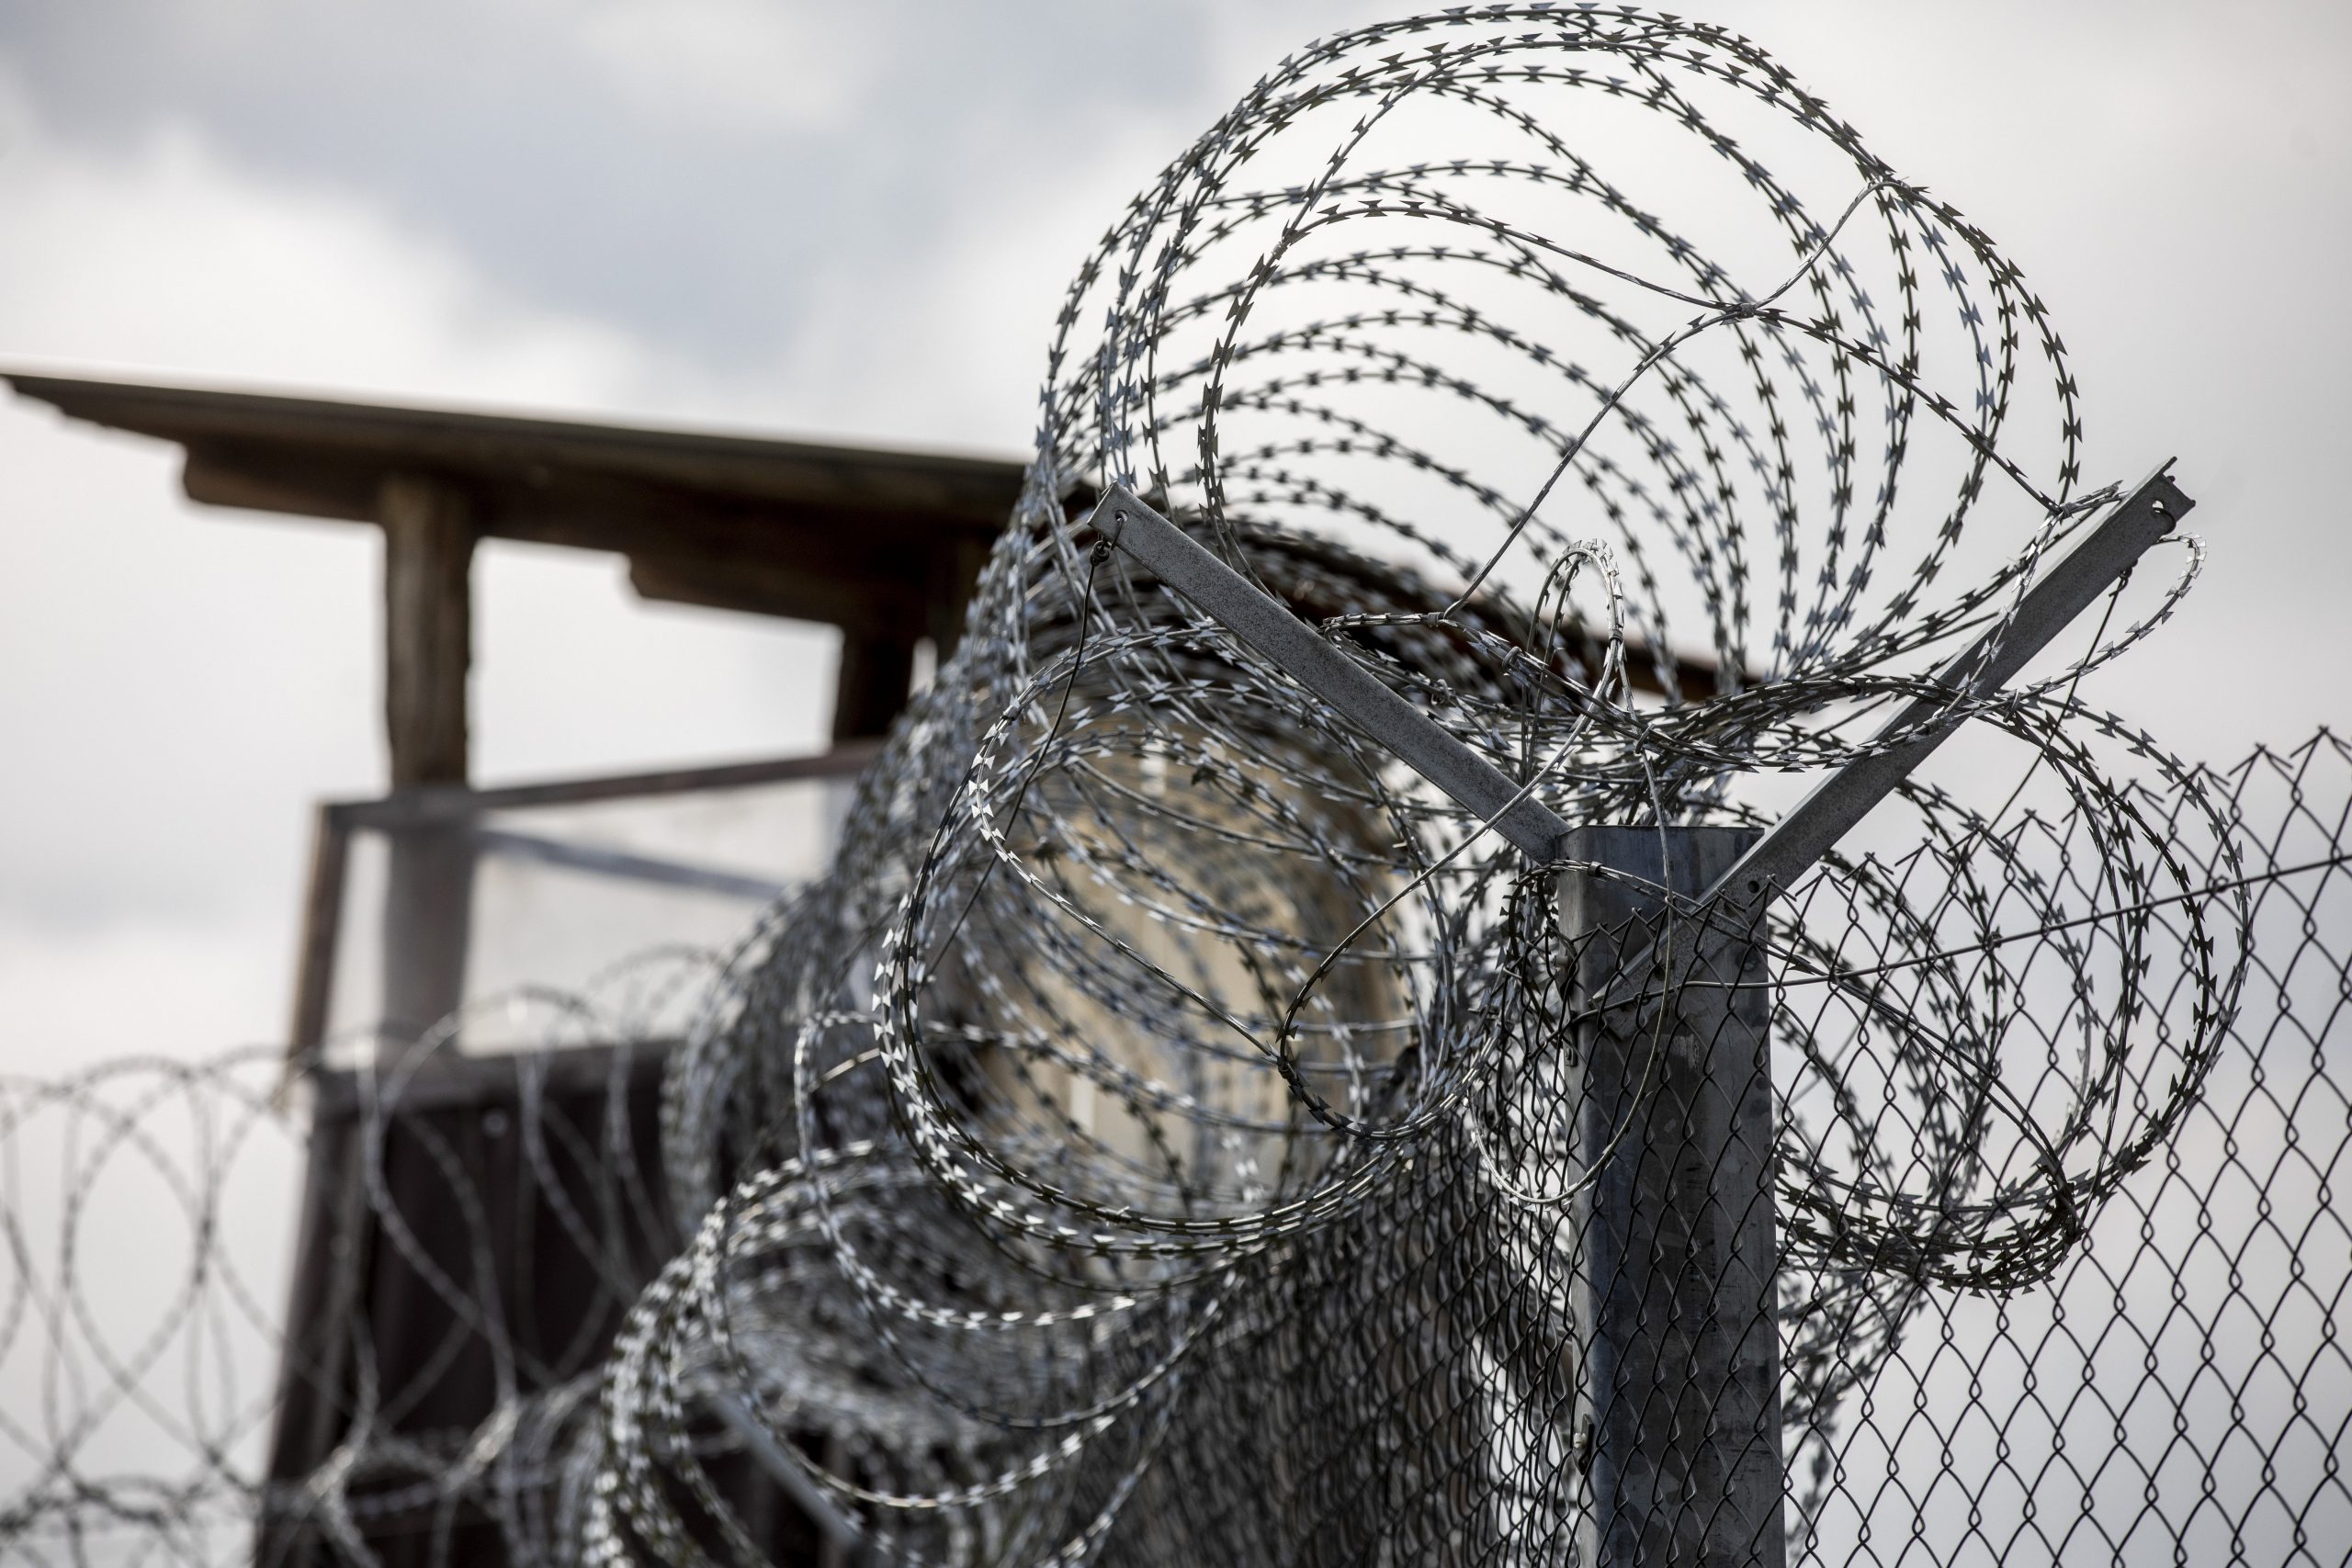 EU Court: Hungary Breaking EU Law by Criminalising Help for Asylum Seekers